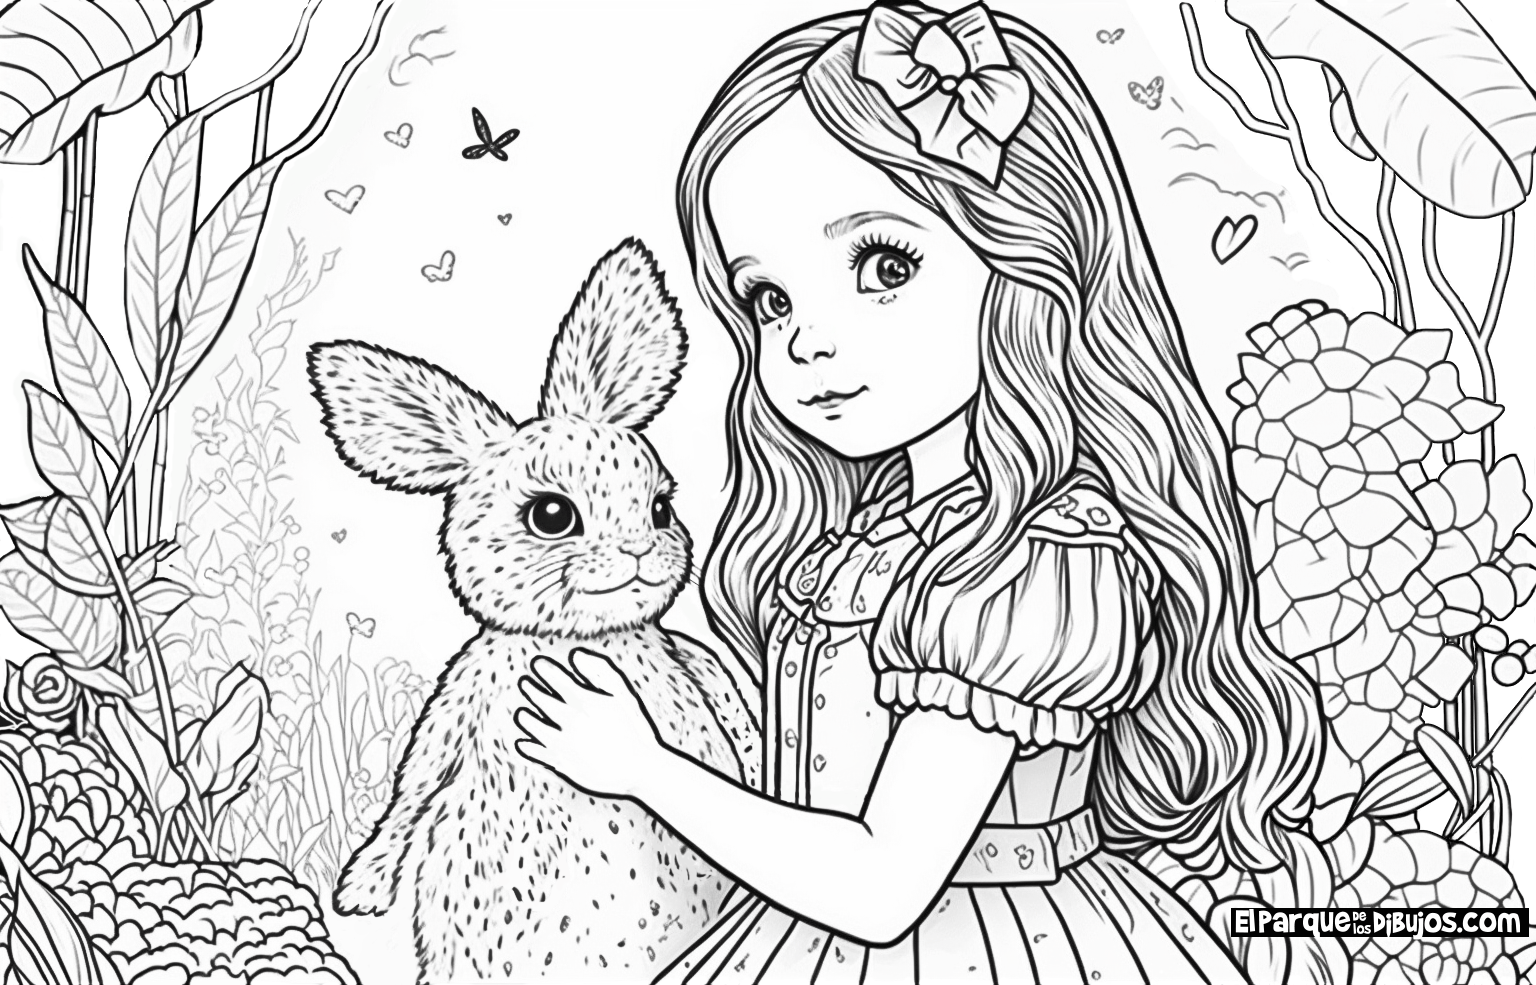 Dibujo para colorear de la película de Disney Alicia en el País de las Maravillas, el conejo blanco con su reloj diciendo que llega tarde y Alicia le persigue.